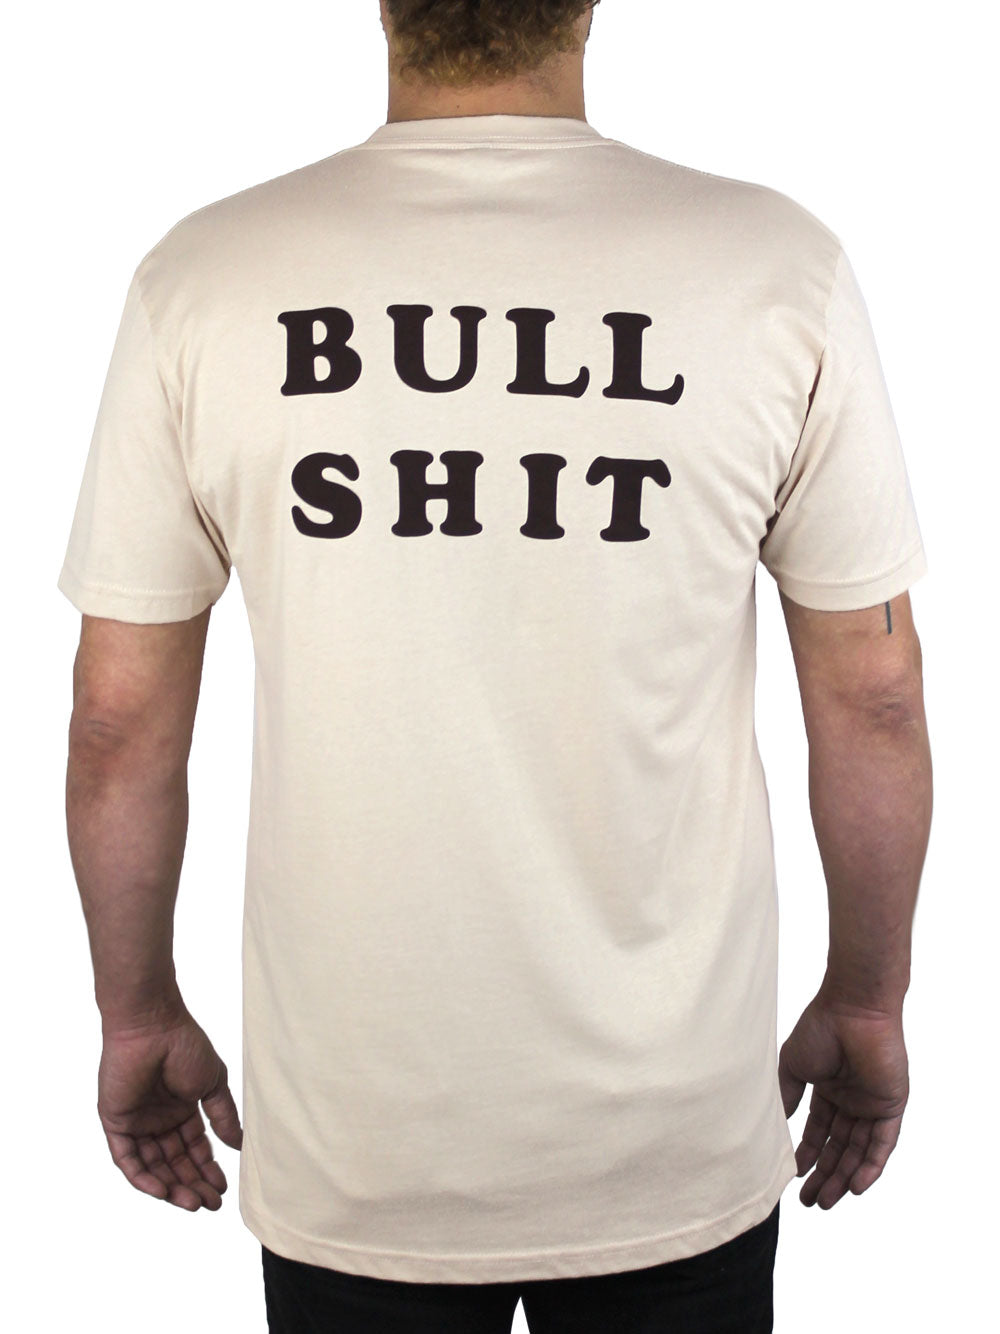 Bull Shit Shirt Back View